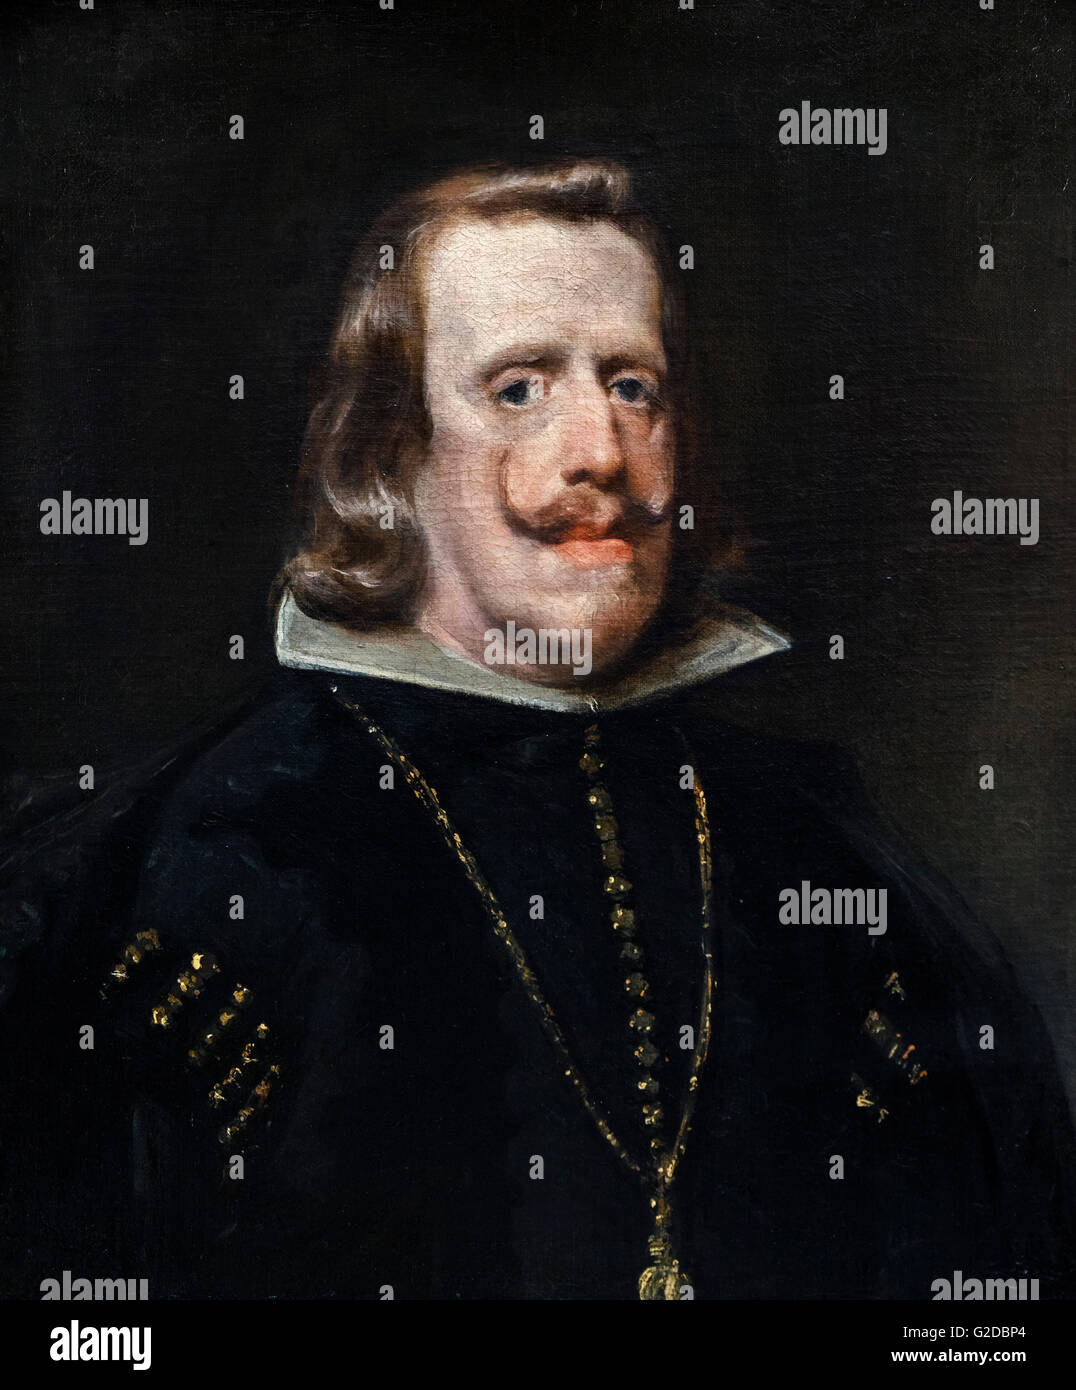 Philippe IV d'Espagne (Felipe IV ; 1605-1665), roi d'Espagne et du Portugal 1621 jusqu'à sa mort (Portugal, jusqu'en 1640), qui a régné pendant la plus grande partie de la guerre de Trente Ans. Portrait par Diego Velázquez, huile sur toile, c.1656. Banque D'Images